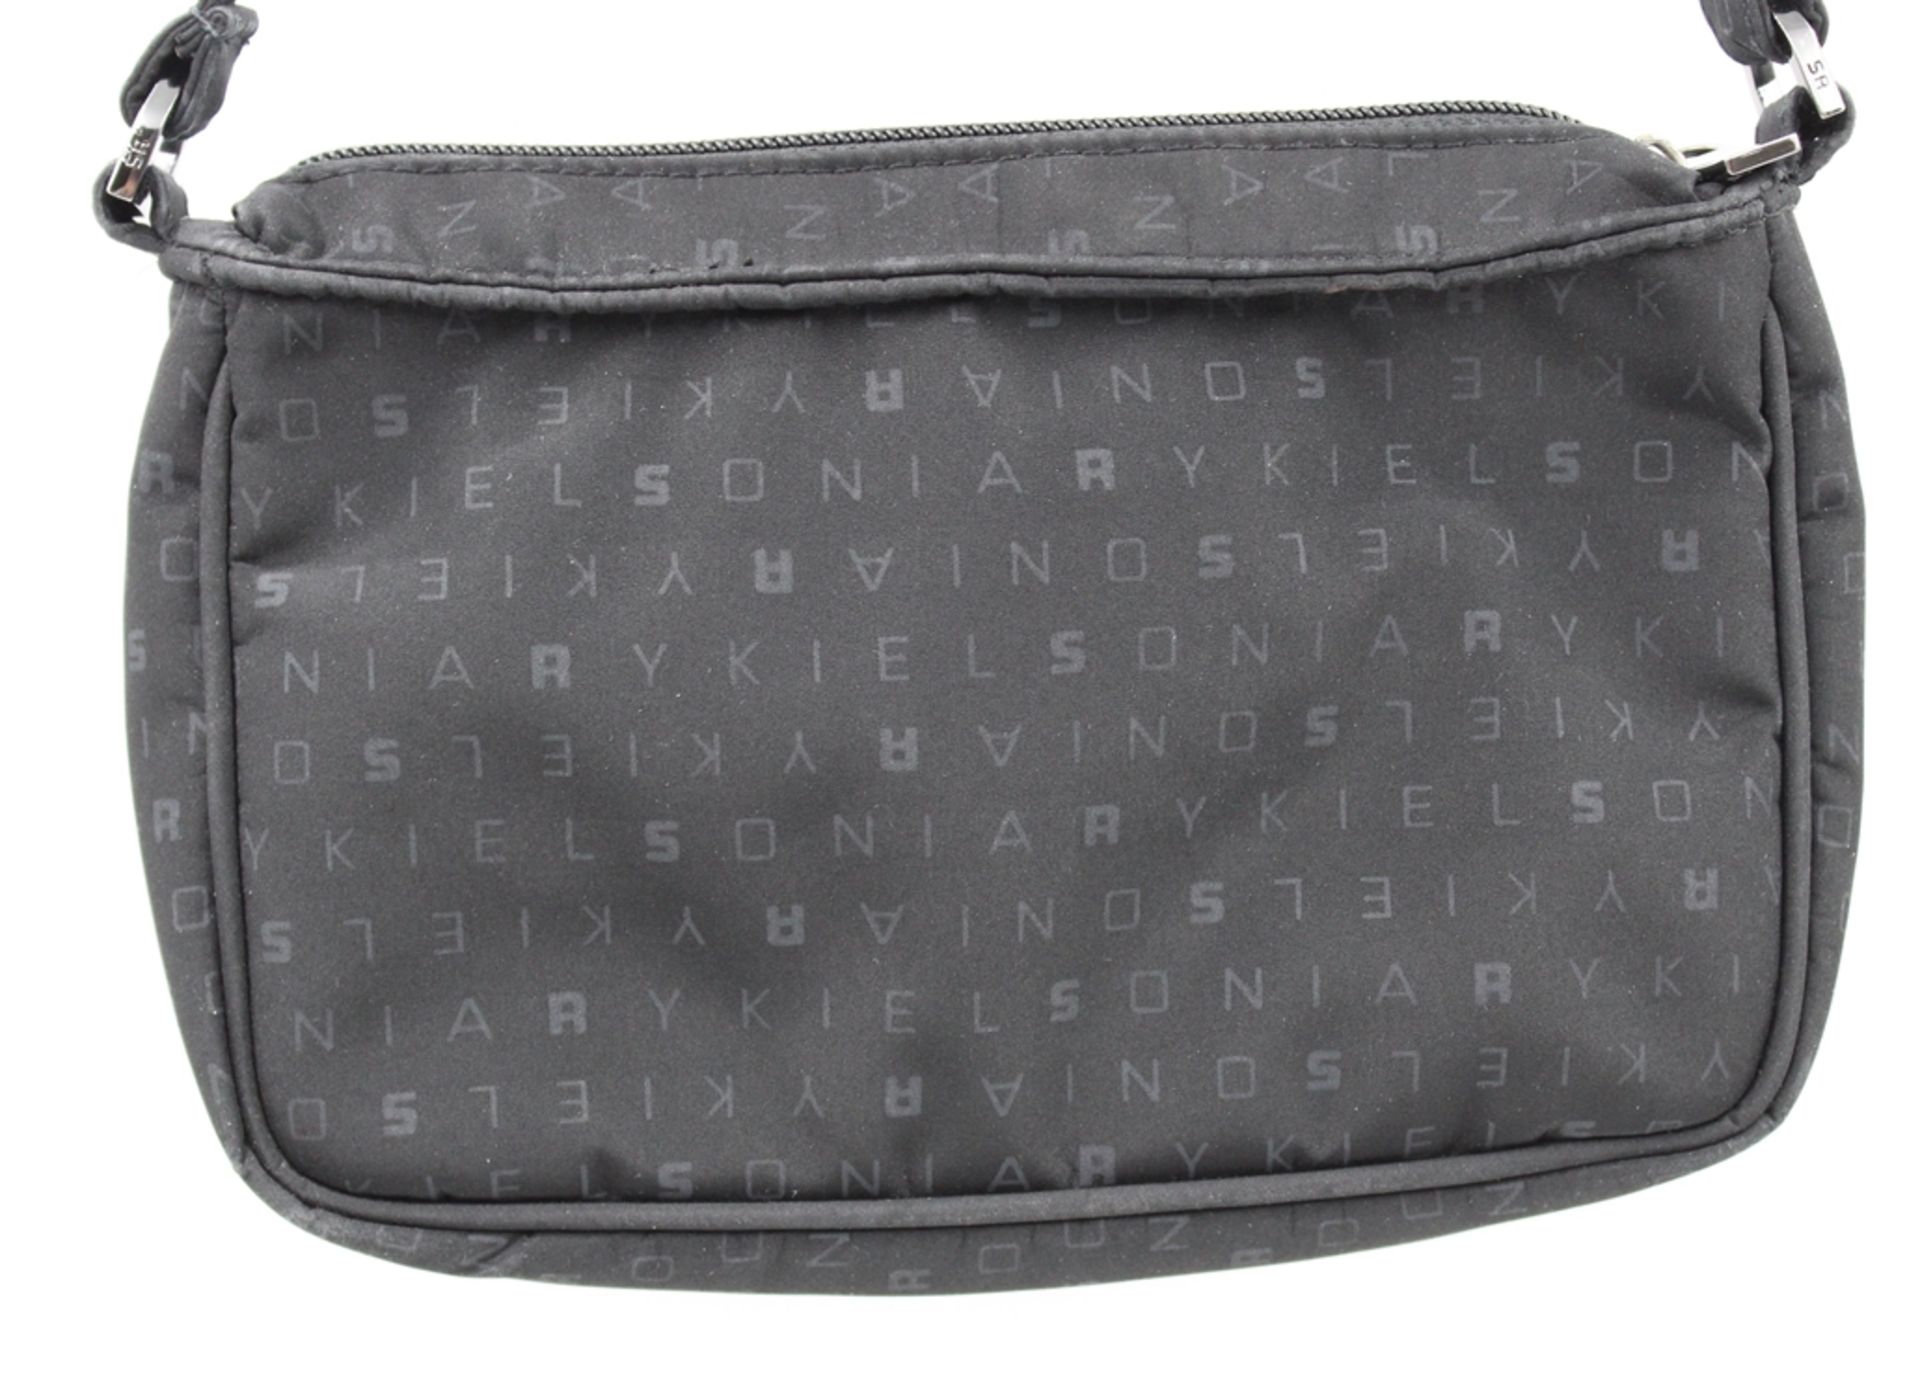 kl. Handtasche, Sonia Rykiel, schwarz, Tragespuren, ca. 14 x 22cm. - Bild 3 aus 6